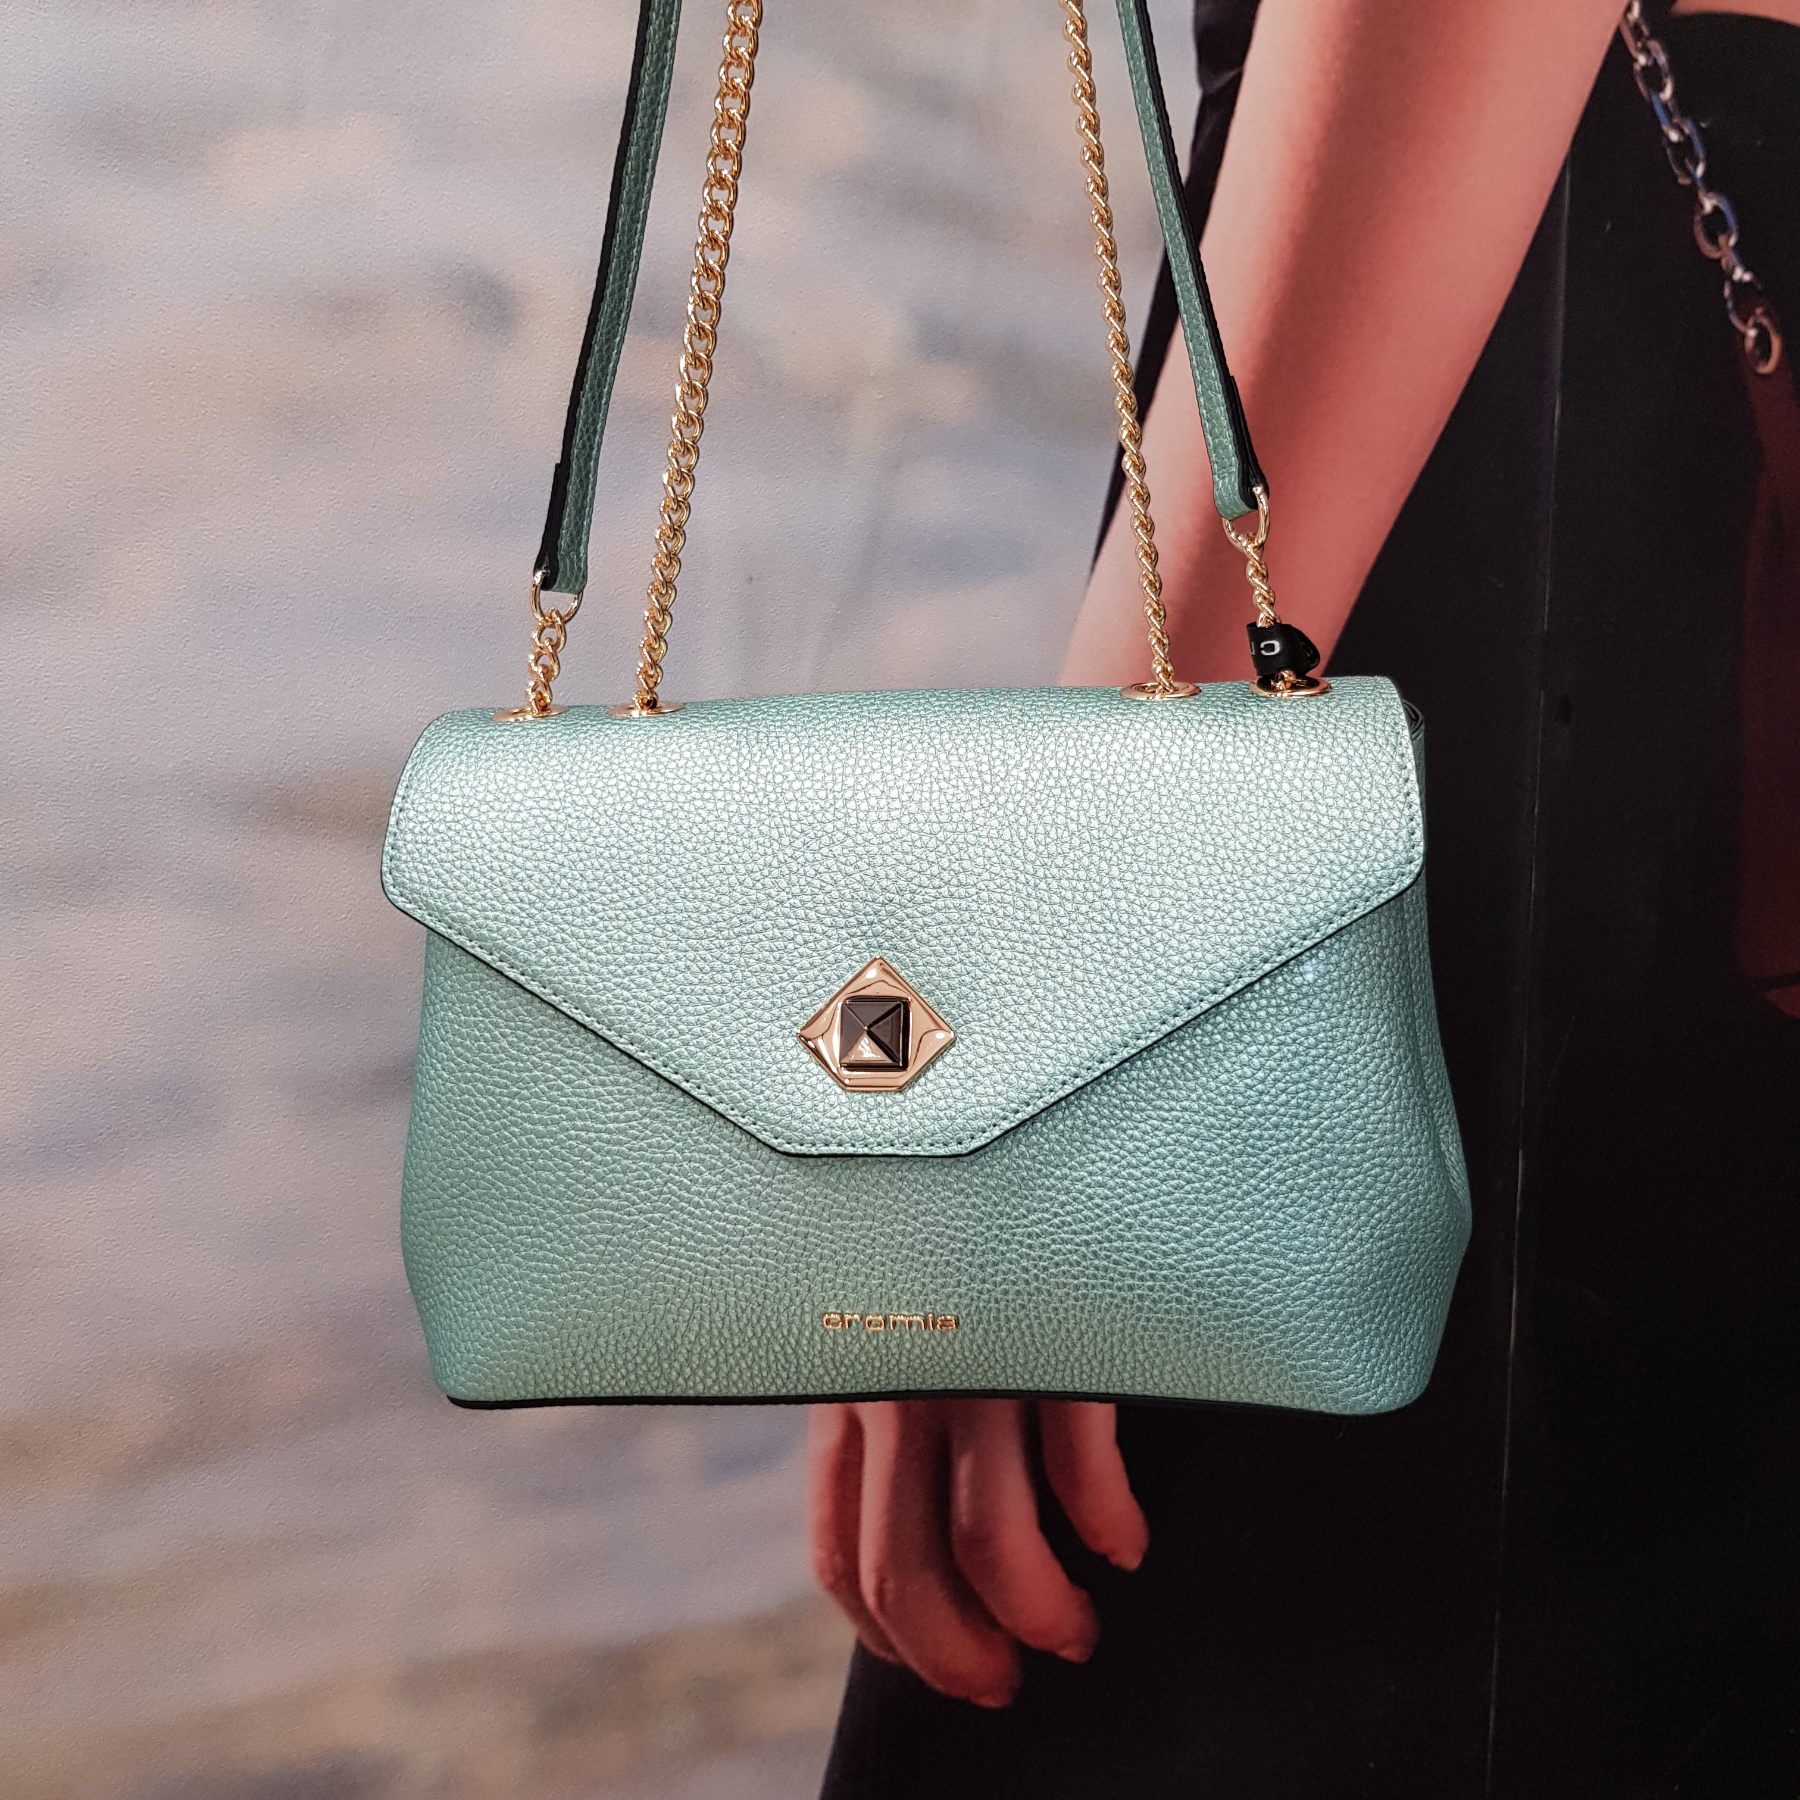 Итальянские сумочки Cromia (Кромиа) из натуральной кожи из коллекций 2020 года выполненные в цвете Смеральдо - фото 2